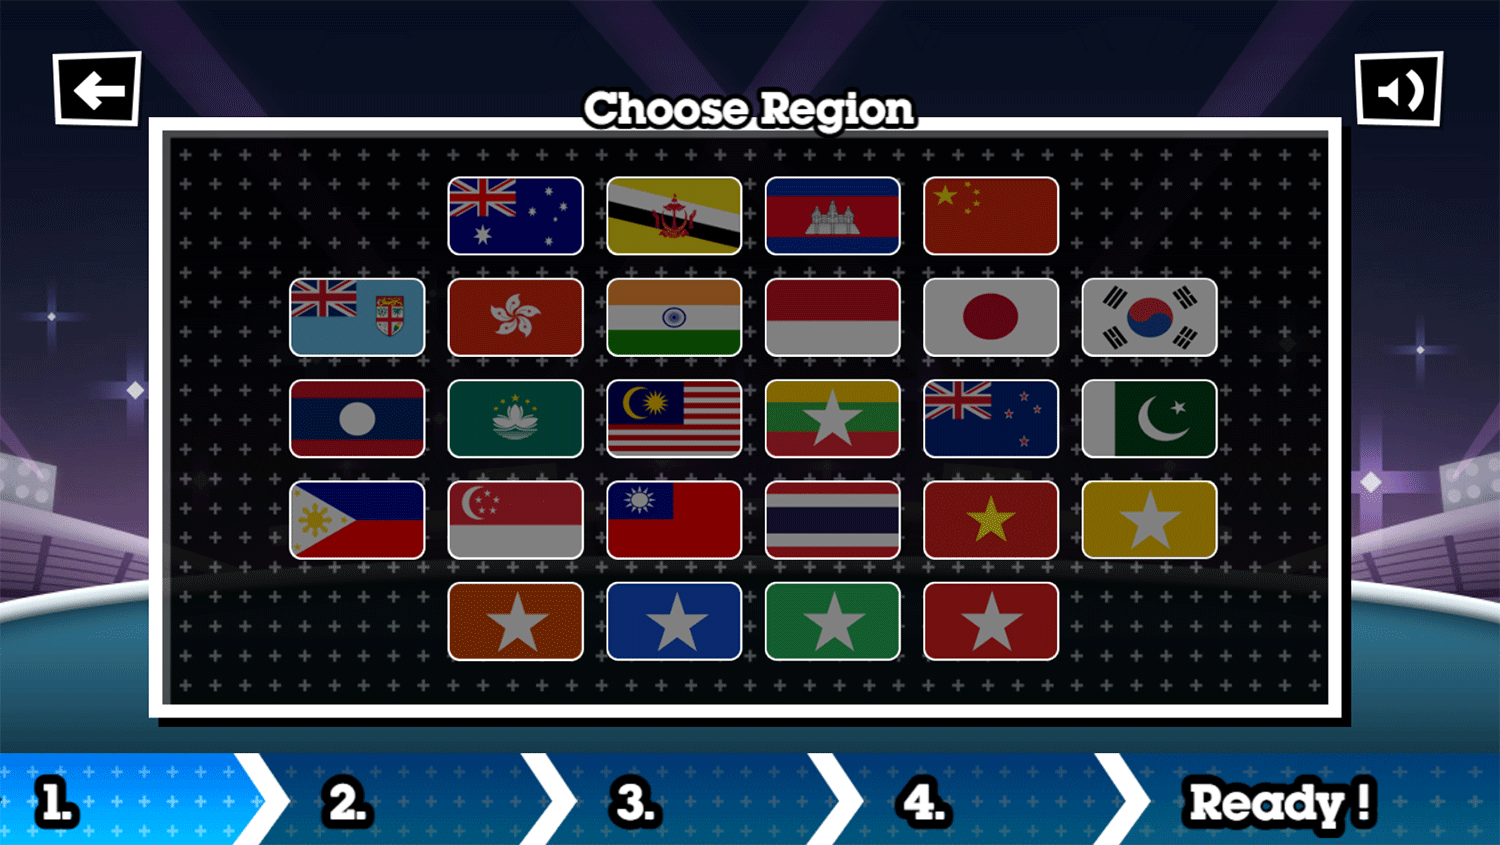 Toon Cup 2018 Choose Region Screenshot.